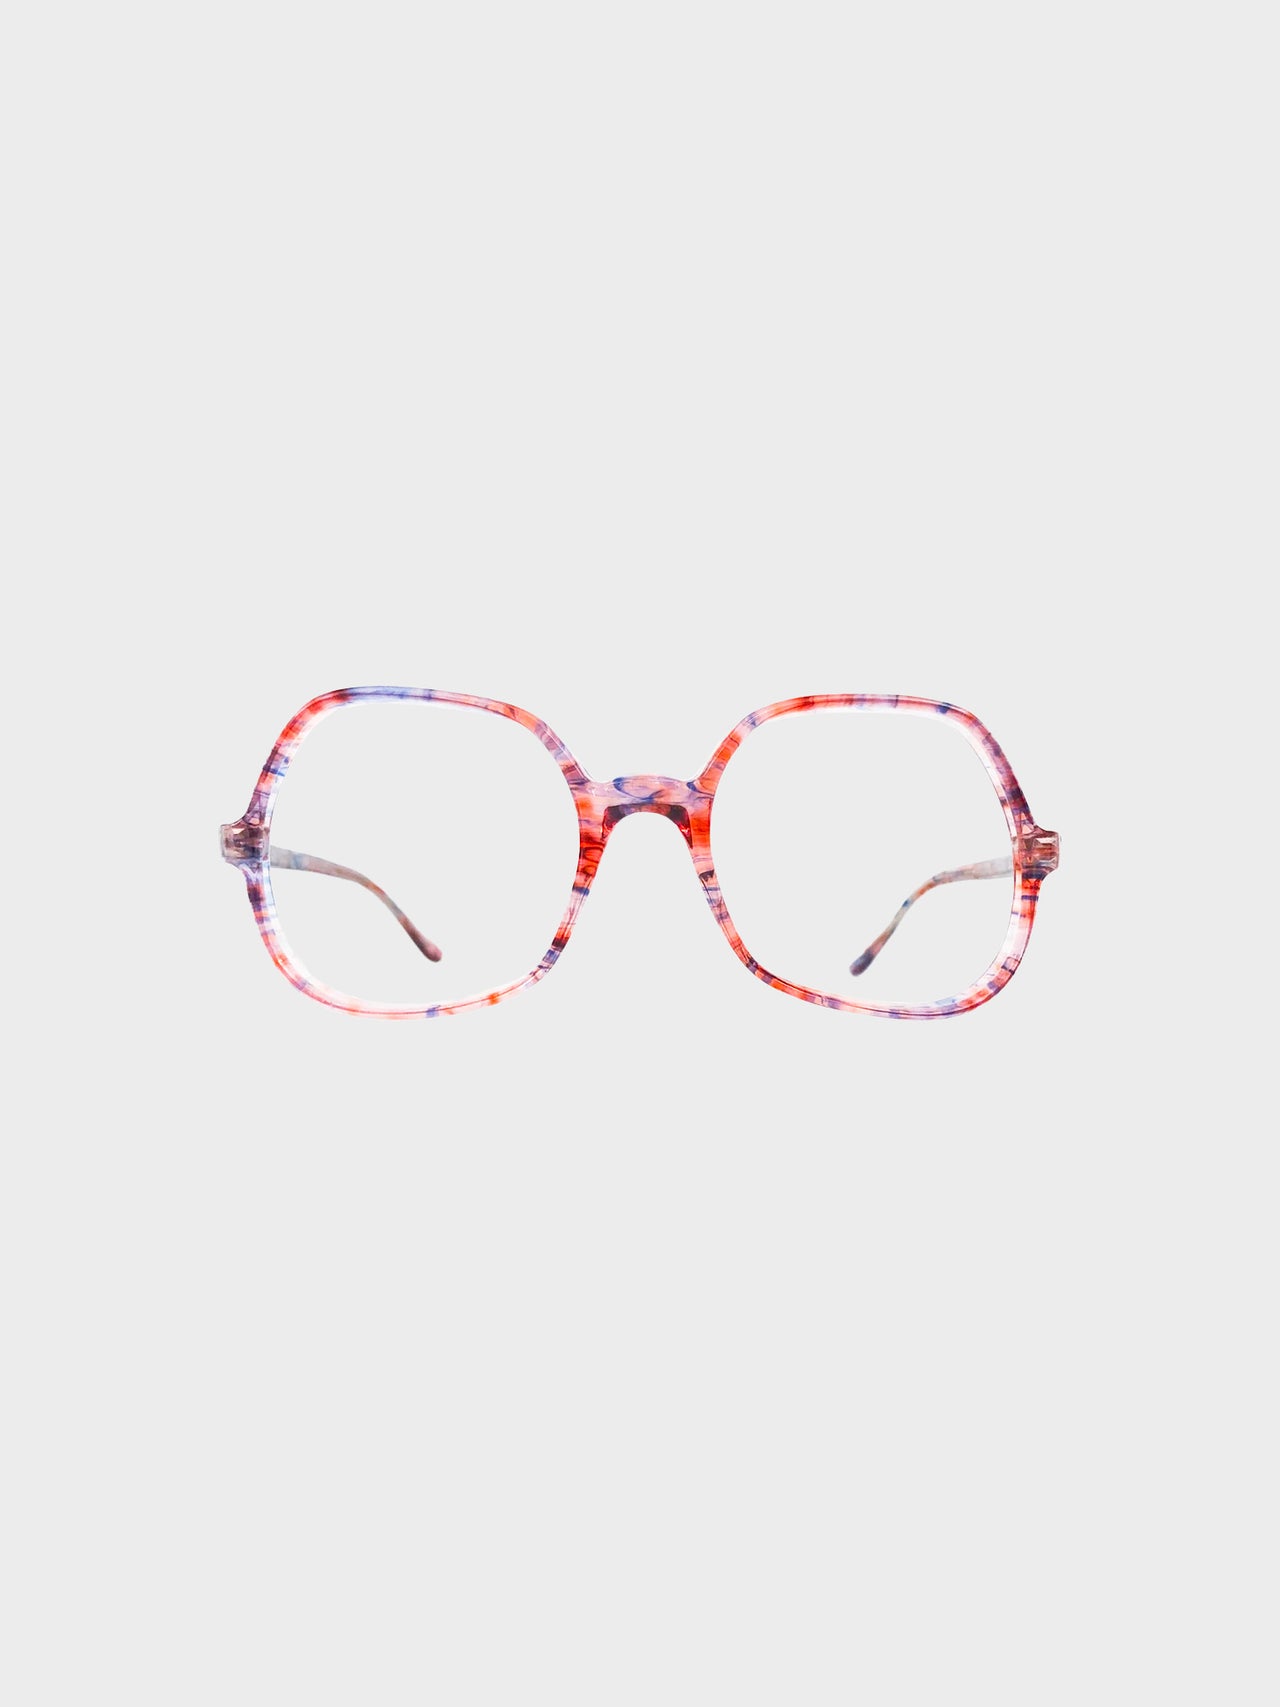 FRENCH VINTAGE / Clear glasses (ORANGE BLUE) #FV41